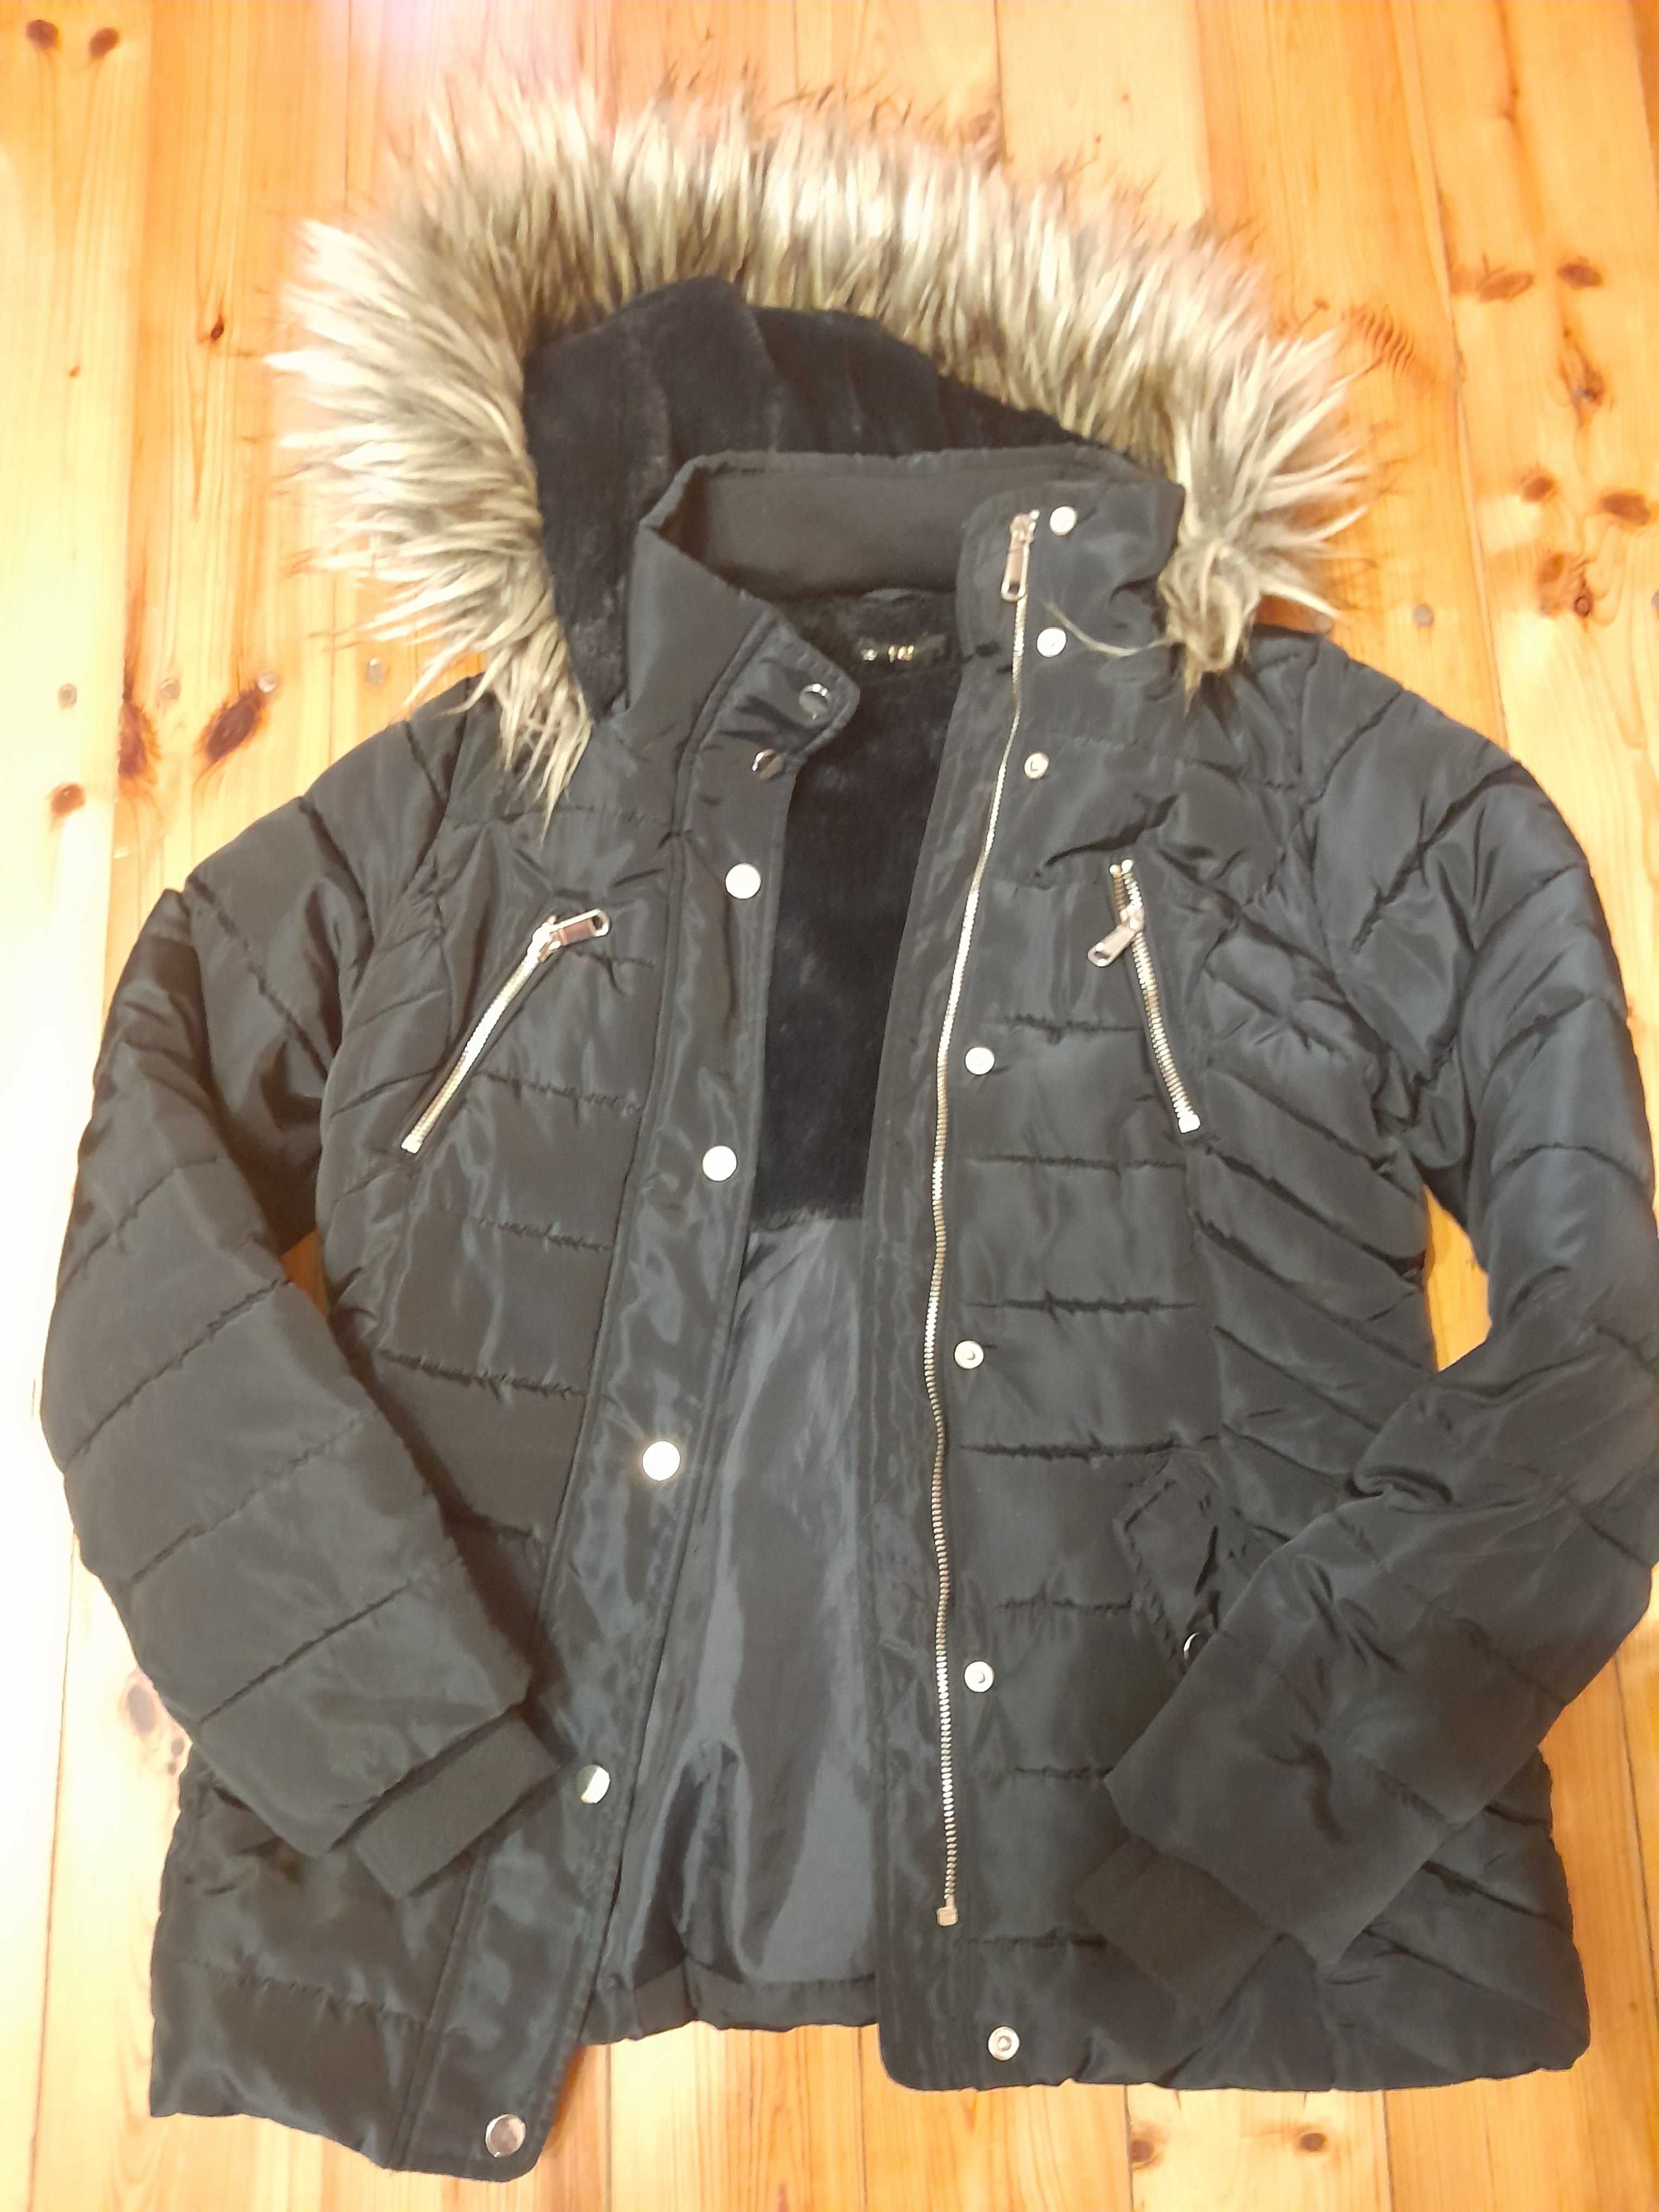 Nowa kurtka damska, F&F, Tesco, rozmiar 38/M. Czarna. Gruba i ciepła.